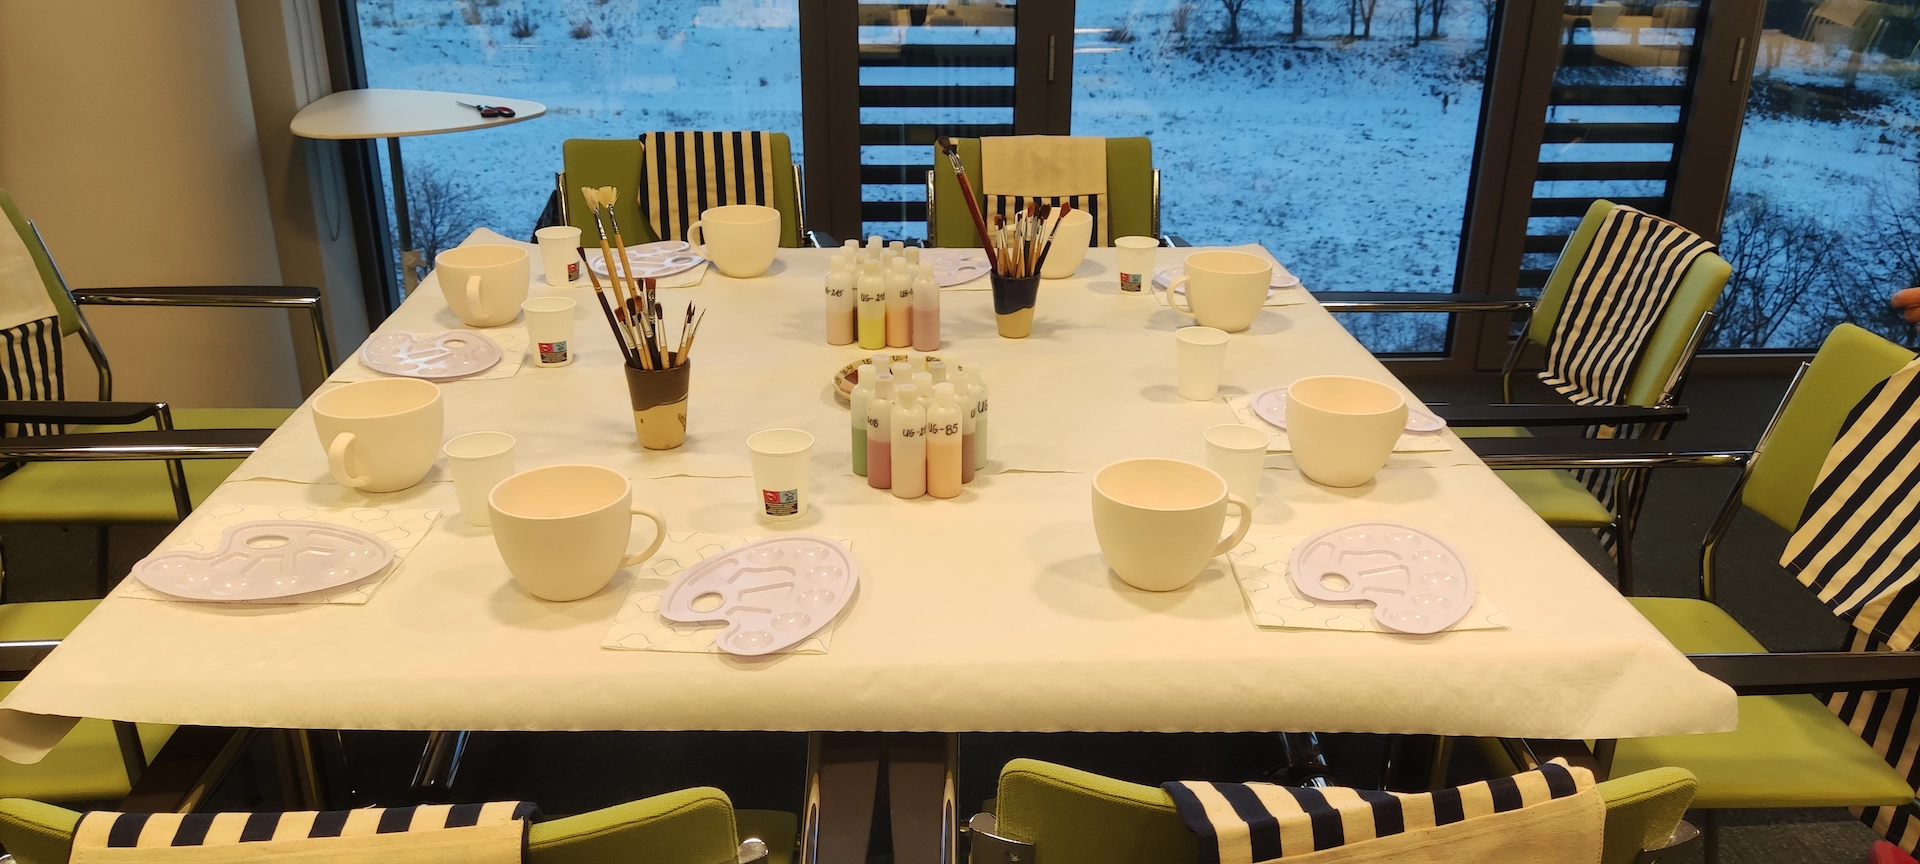 Warsztaty ceramiczne dla firm - widok na przygotowane stoły na imprezę integracyjną